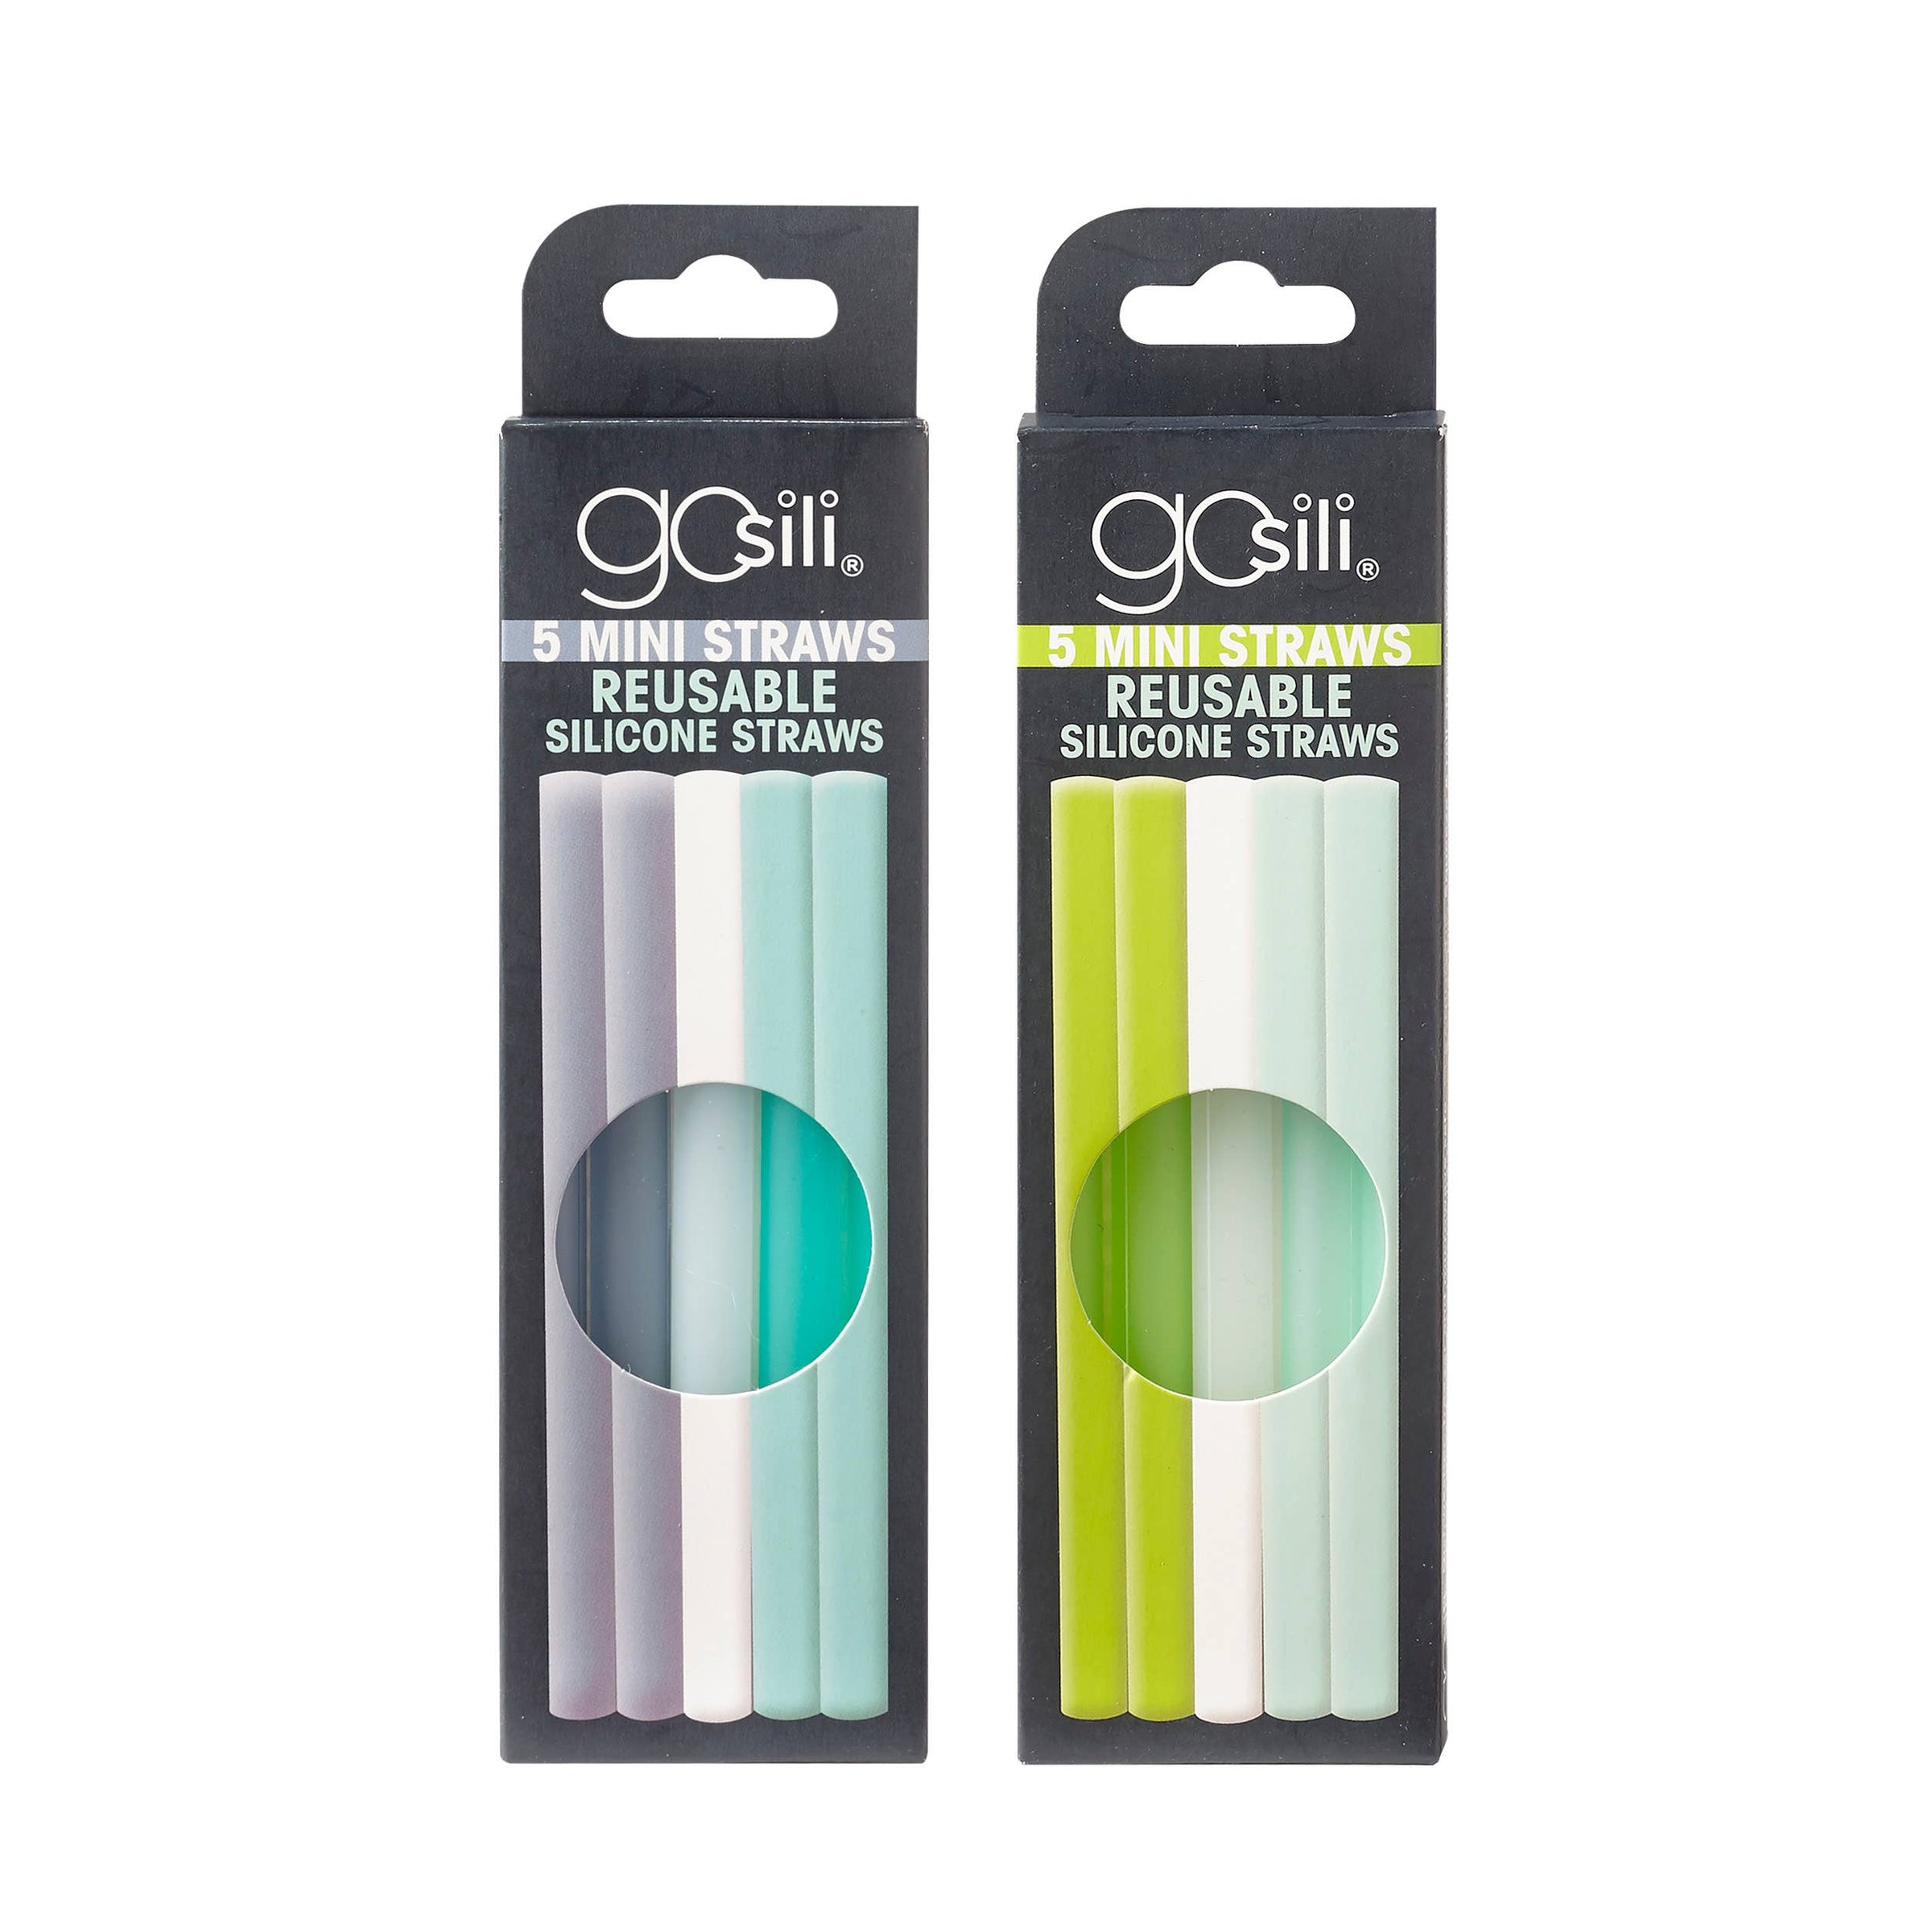 GoSili Reusable Mini Silicone Straw